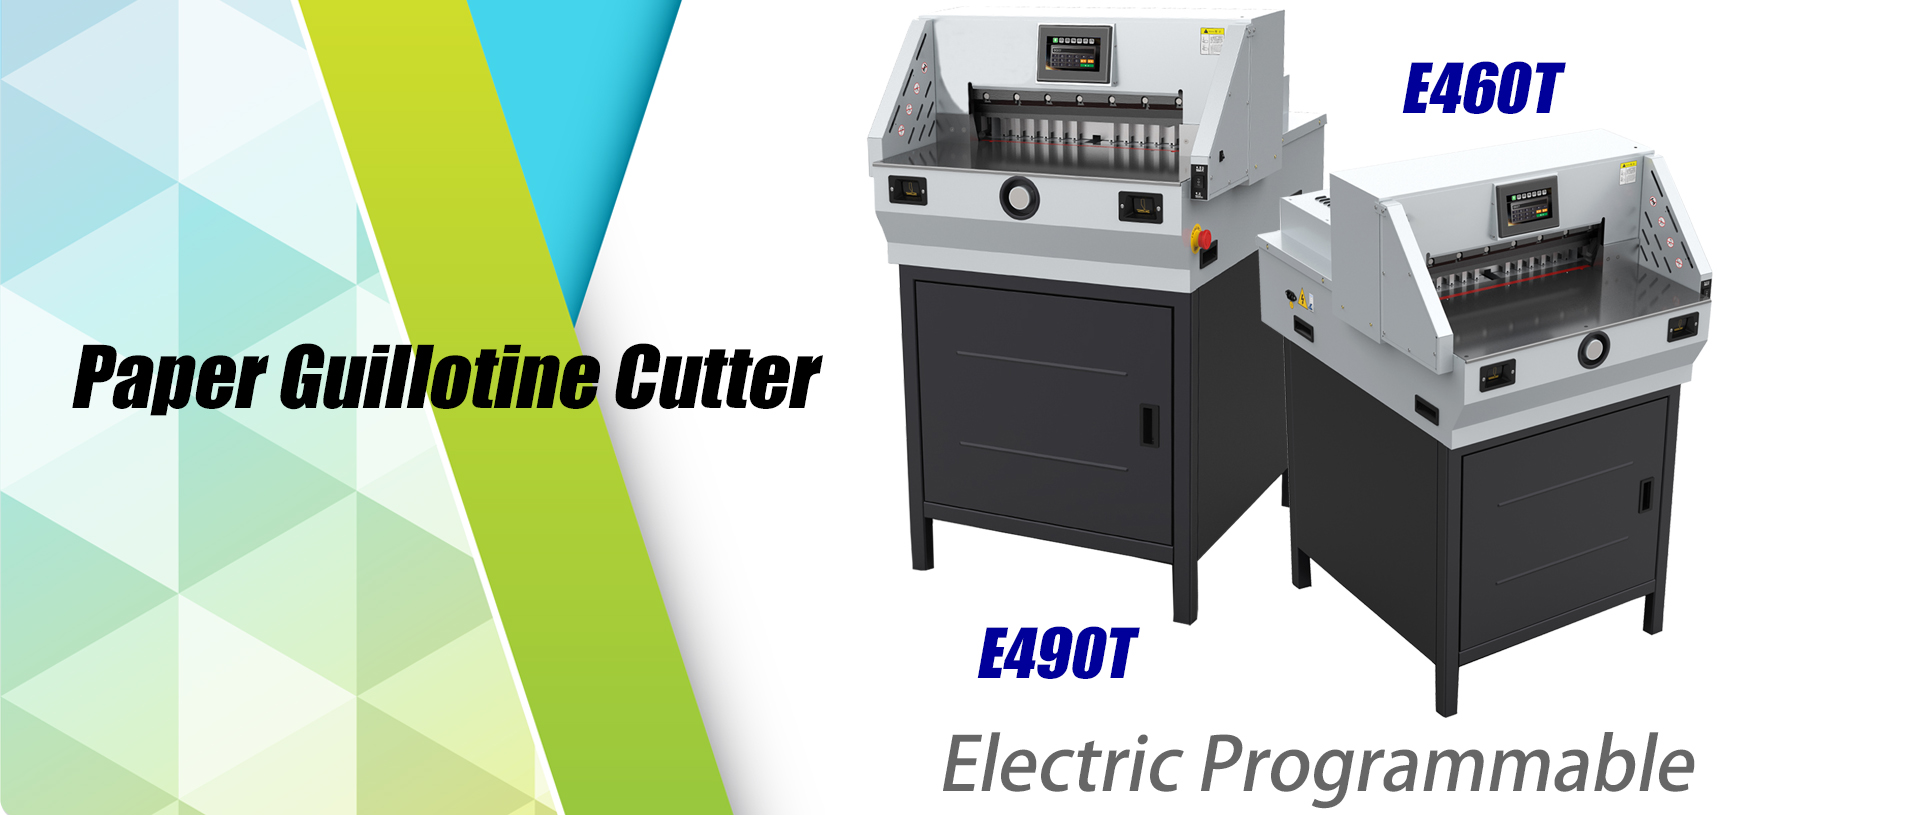 E460T Paper Guillotine Cutter